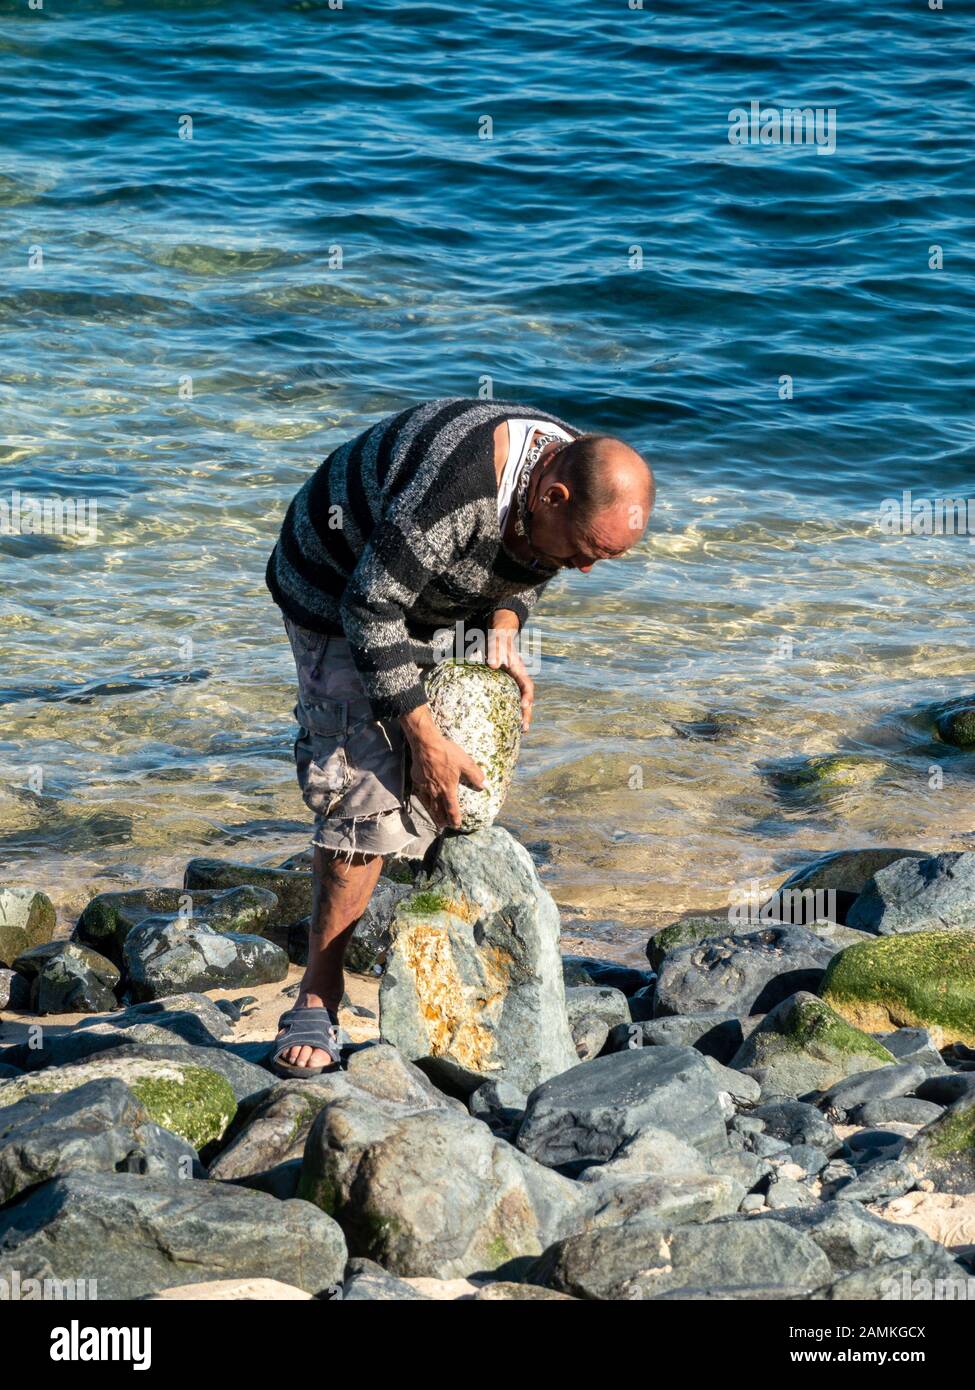 Balanced Rock artist Erstellen ausgewogene Skulpturen aus Stein unser Strand Kies auf St Ives, Cornwall, England, Großbritannien Stockfoto